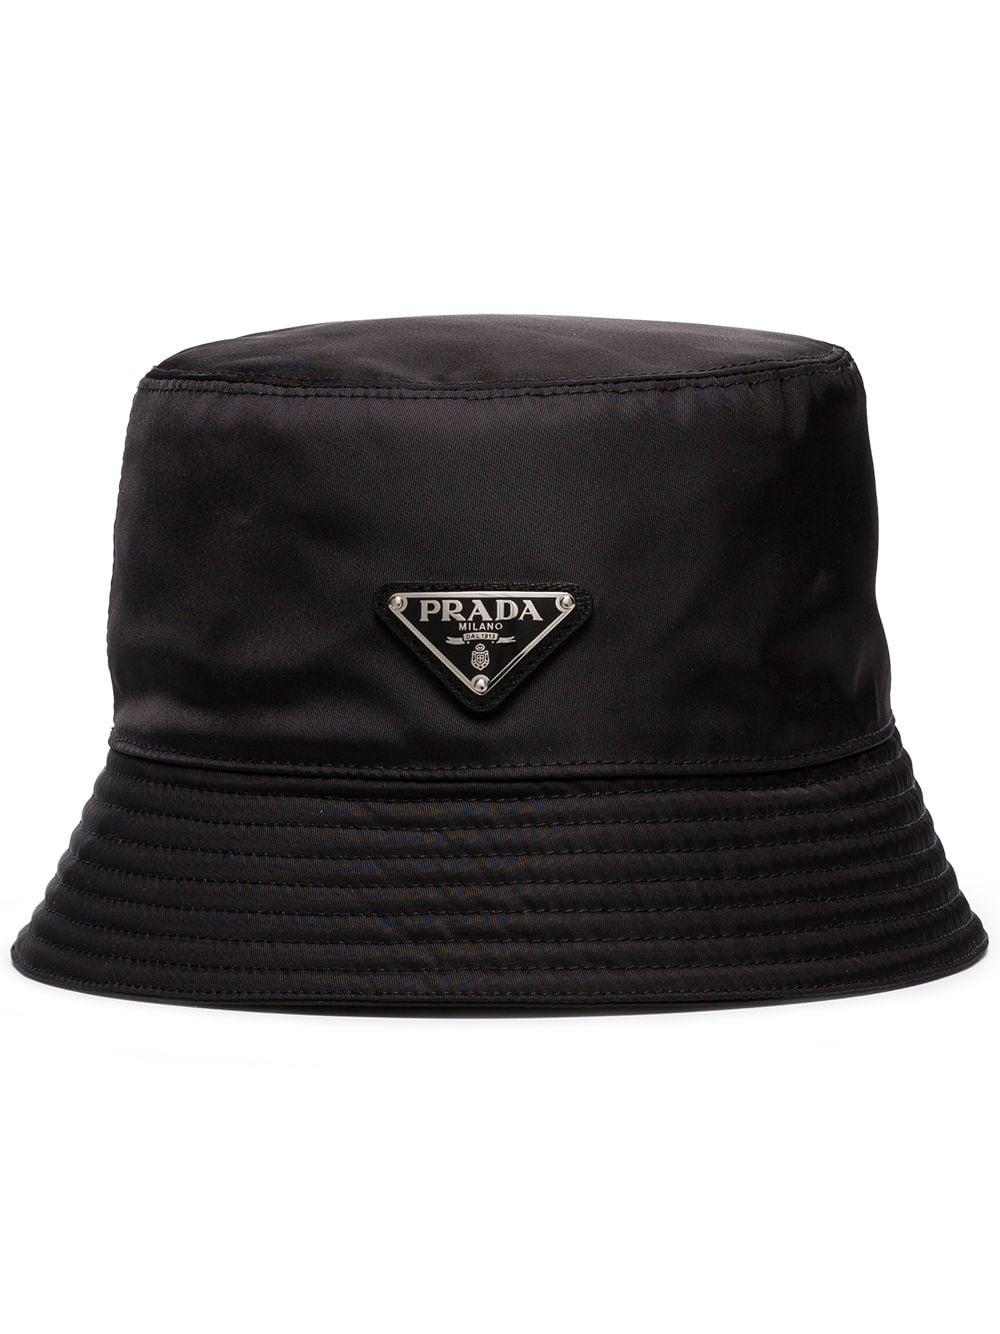 Prada Logo Plaque Bucket Hat in Black for Men - Lyst